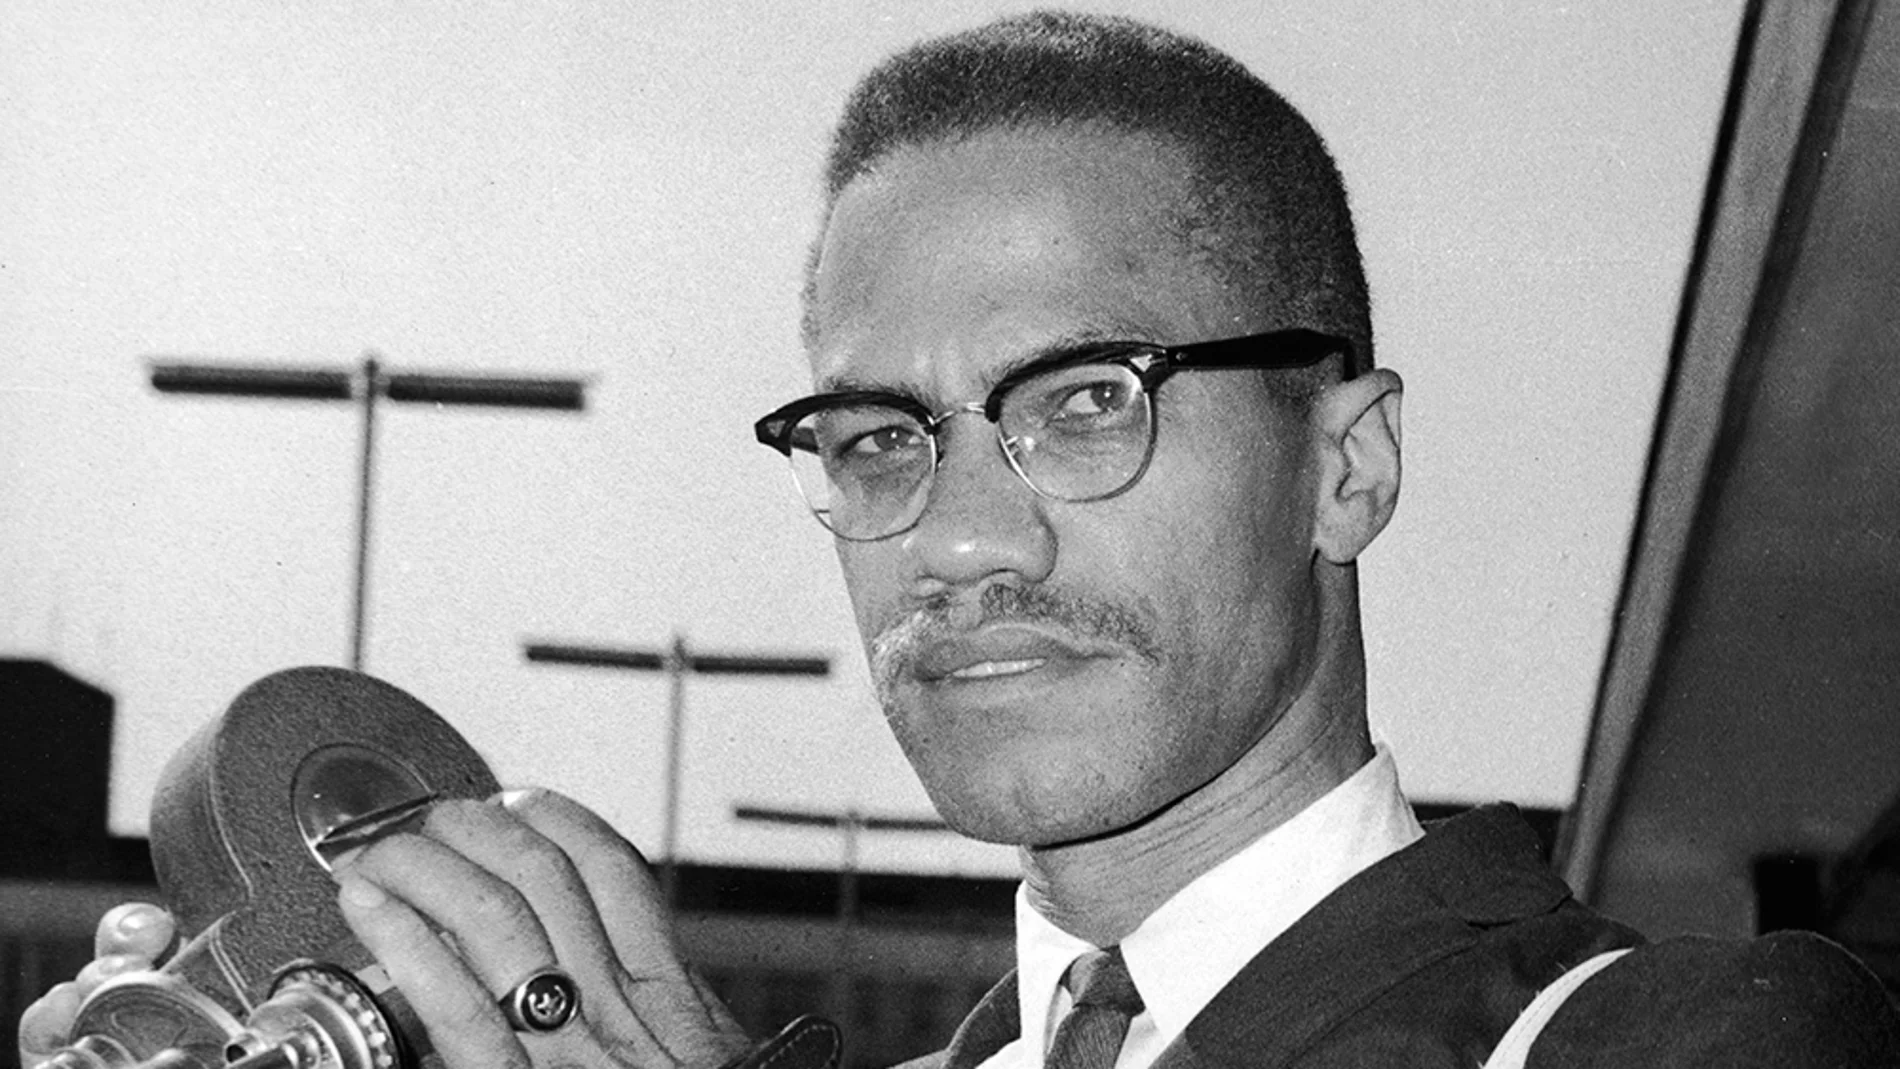 Retrato del activista político estadounidense y líder radical de derechos civiles Malcolm X, en 1964